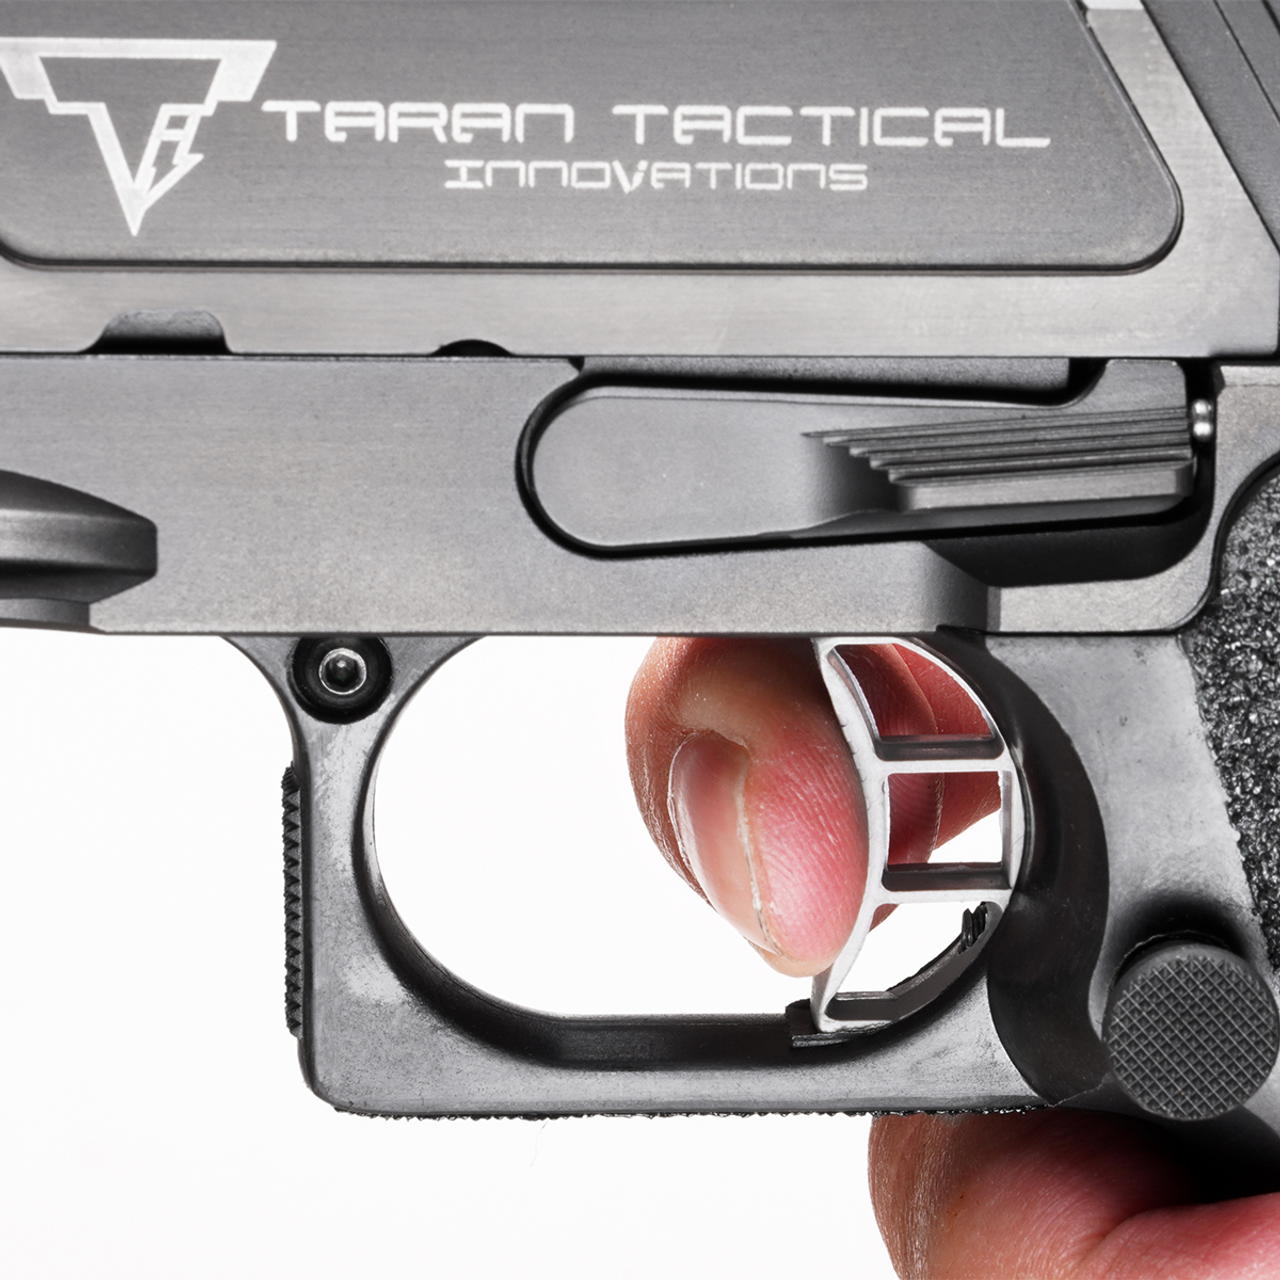 Viper Tactical - Say no more!!! 😁😁👌👊 #vipertactical #020magazine  #tacticallife